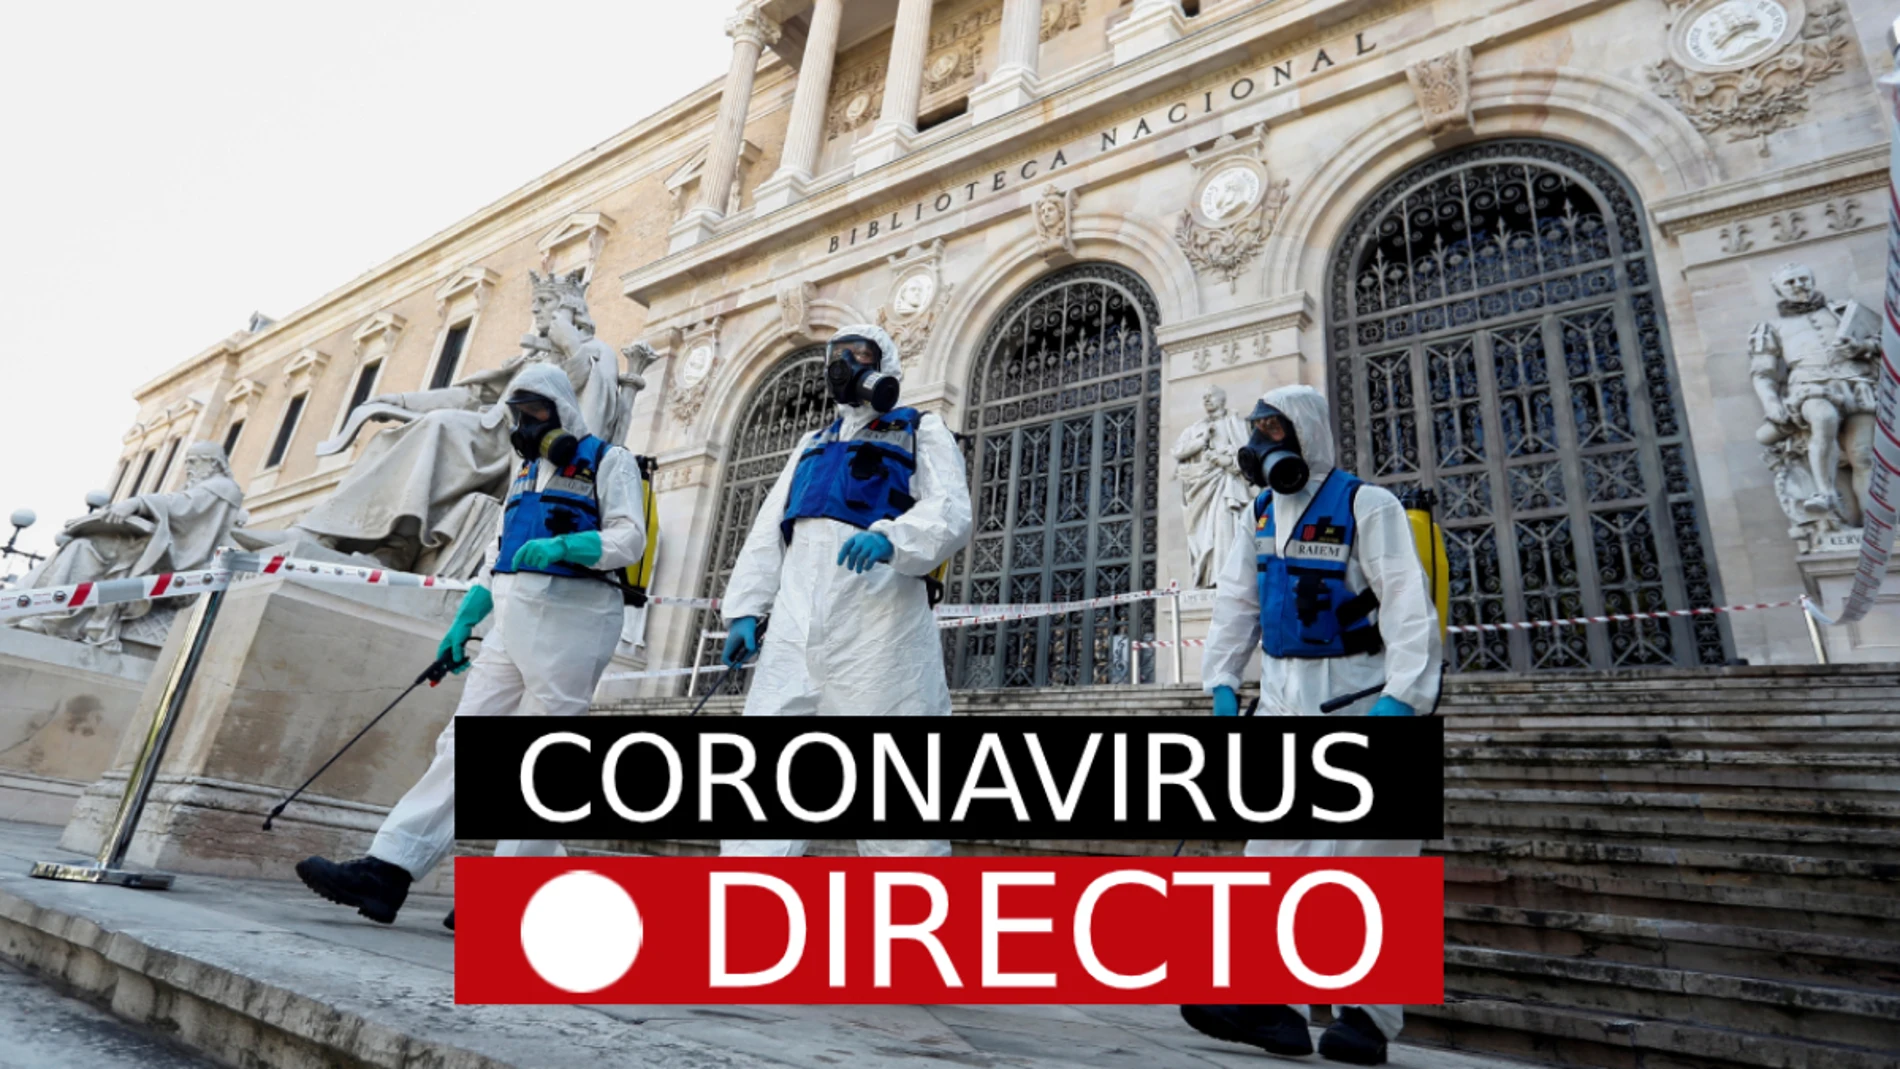 Coronavirus España hoy | Noticias, datos, fases de la desescalada y última hora en directo